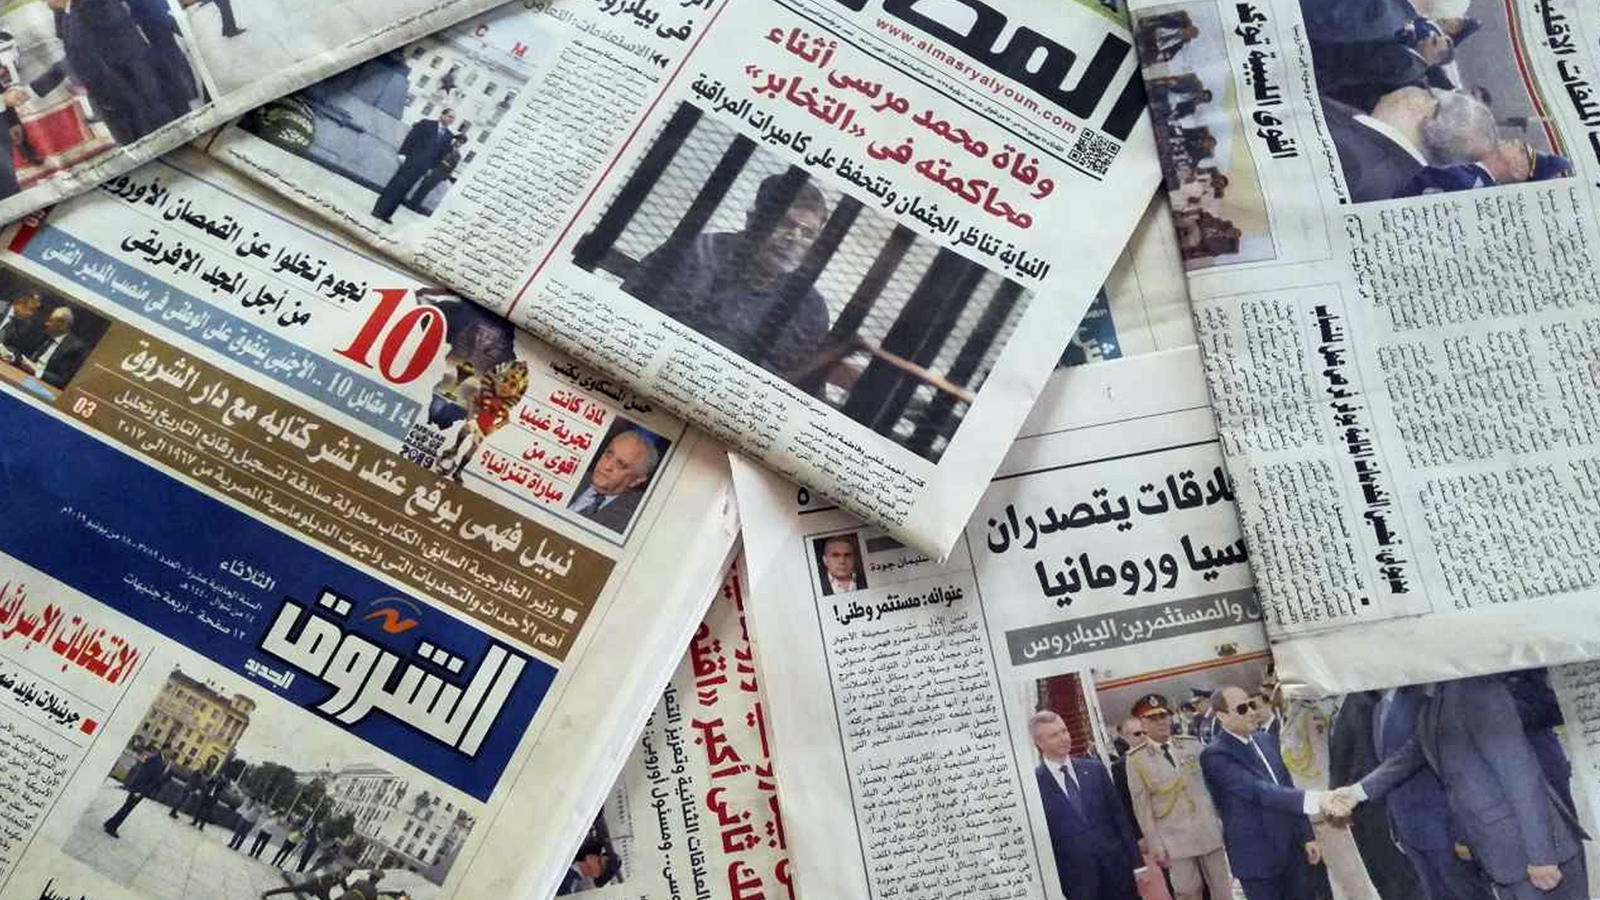 "مراسلون بلا حدود": الإعلام الرسمي المصري ينقَضّ على الصحافة